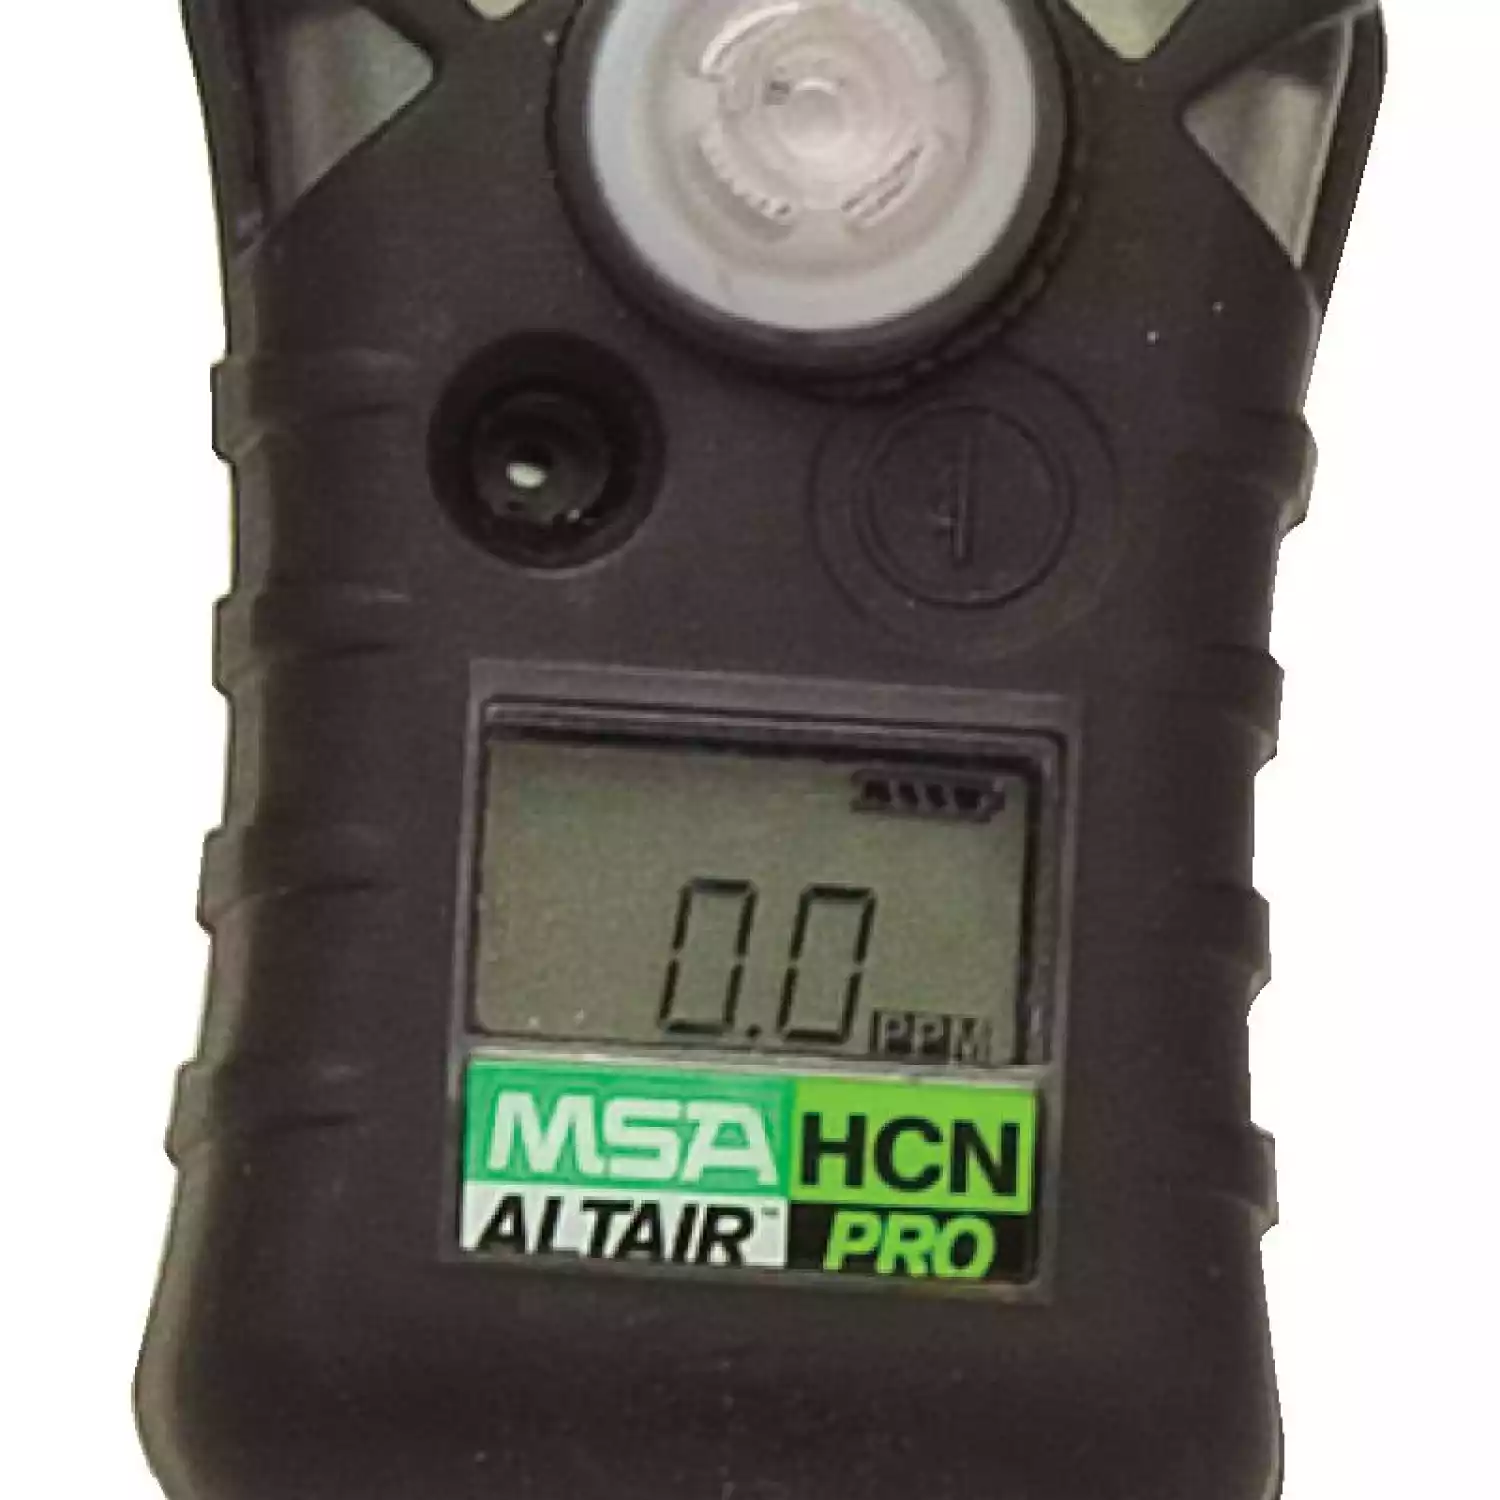 ALTAIR PRO HCN газоанализатор, пороги тревог: 1 ppm и 2 ppm - 1